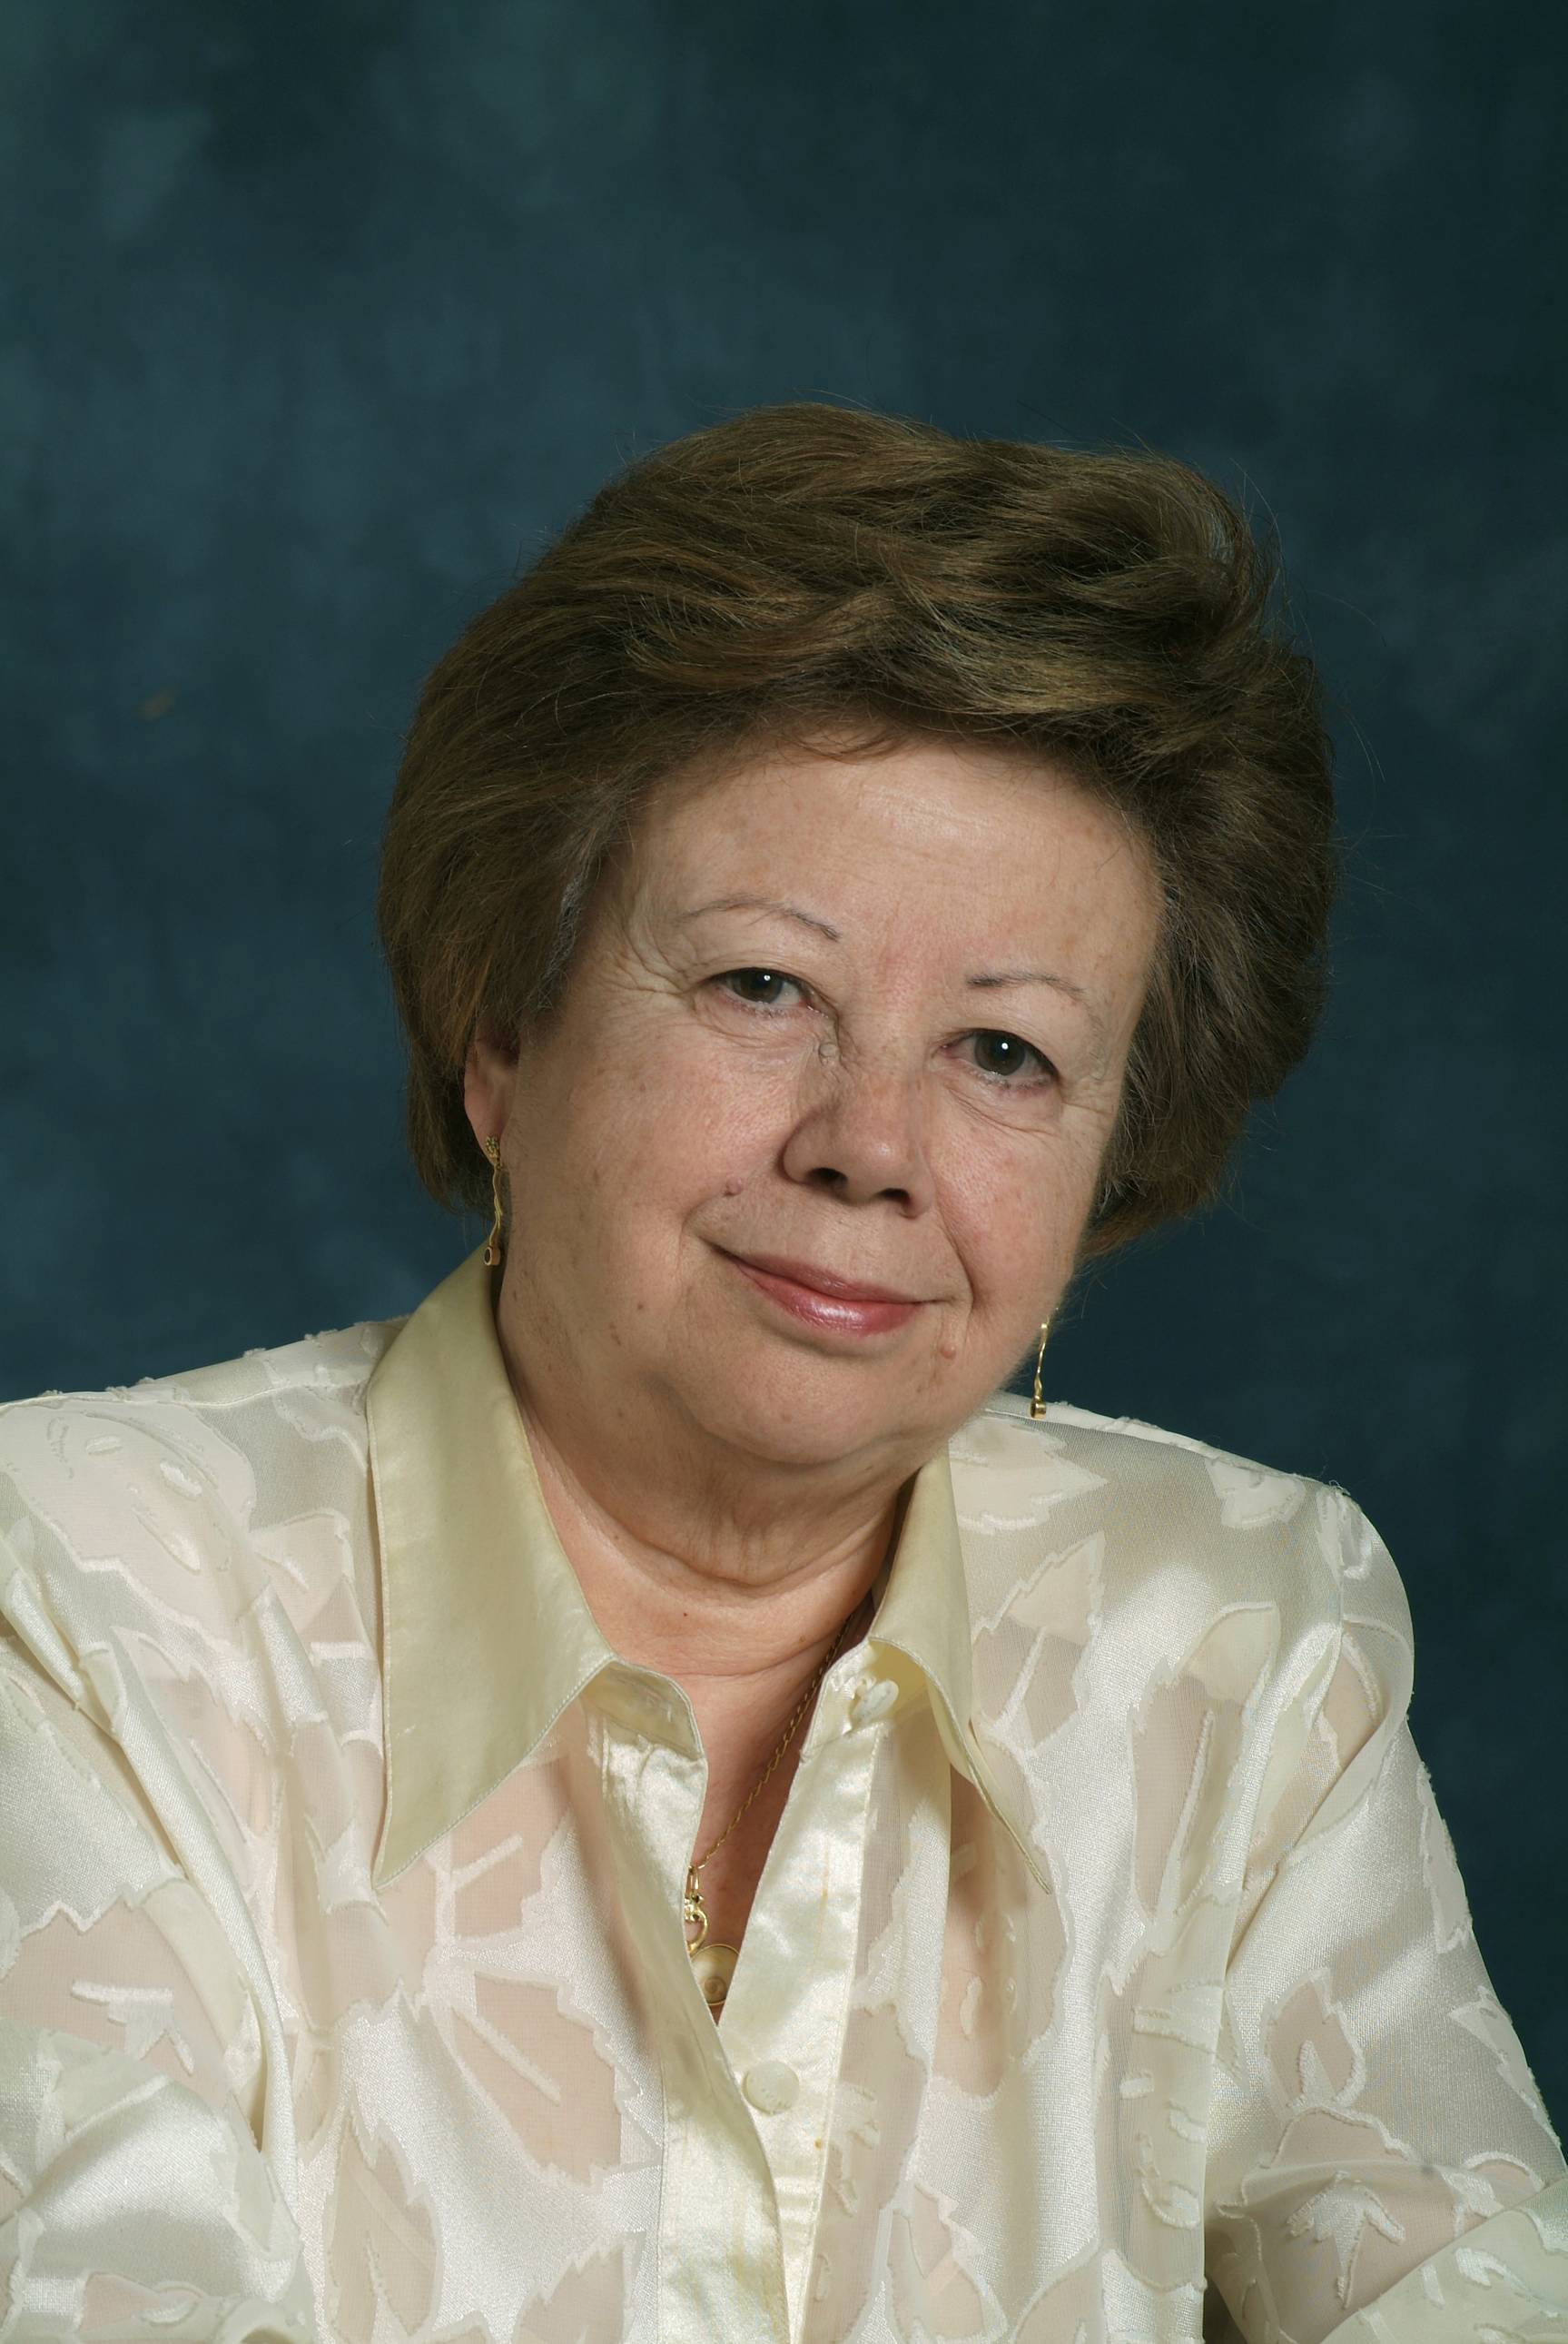 Olga Xirinacs